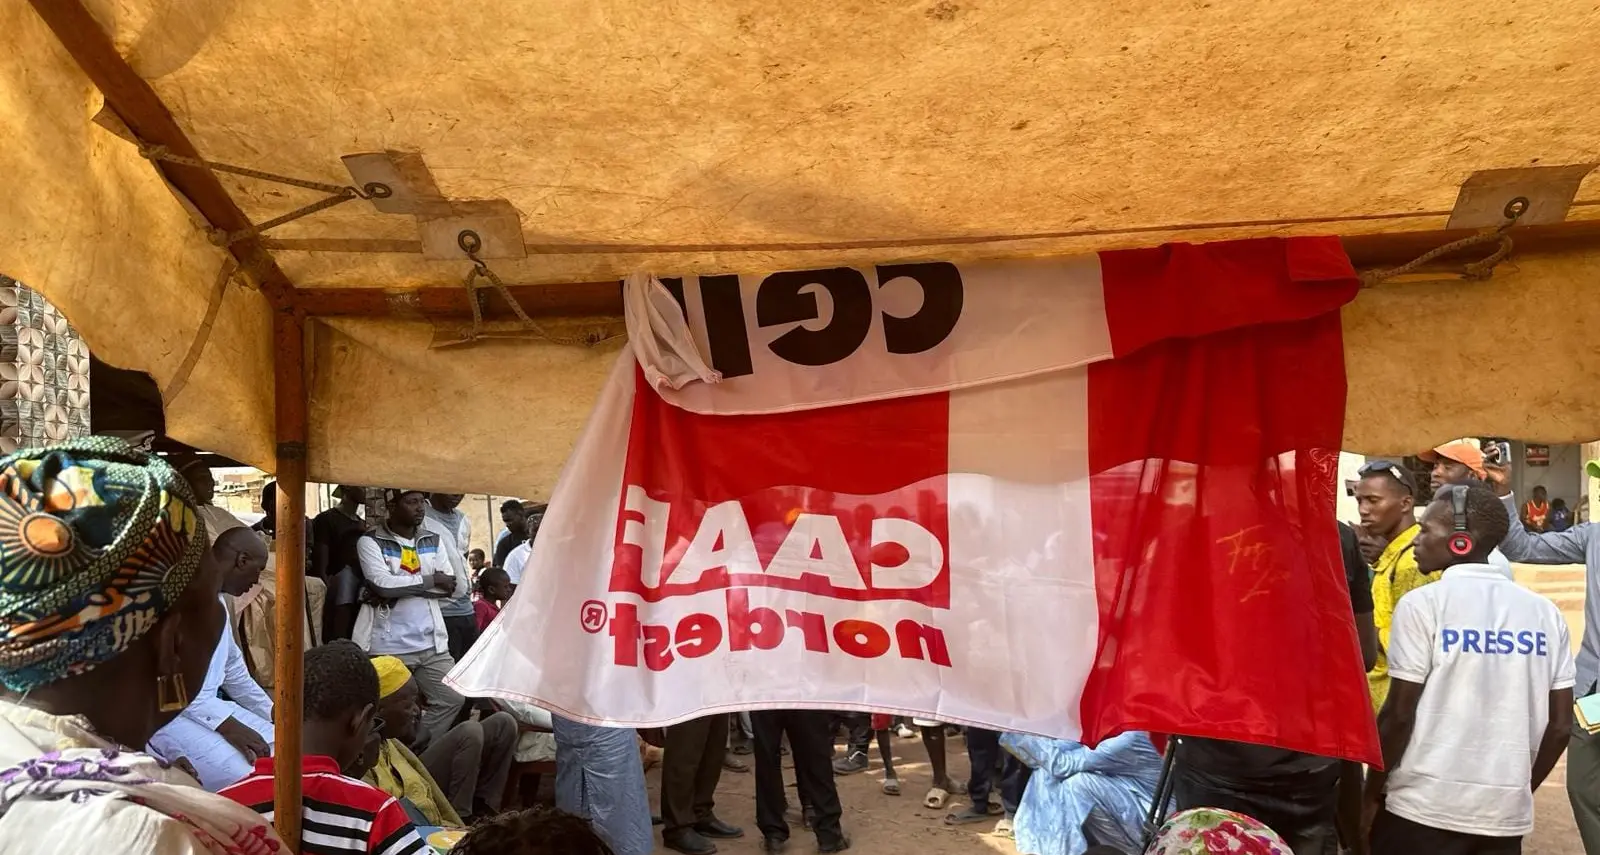 Solidarietà: Caaf Cgil Nord Est dona un’ambulanza in Senegal